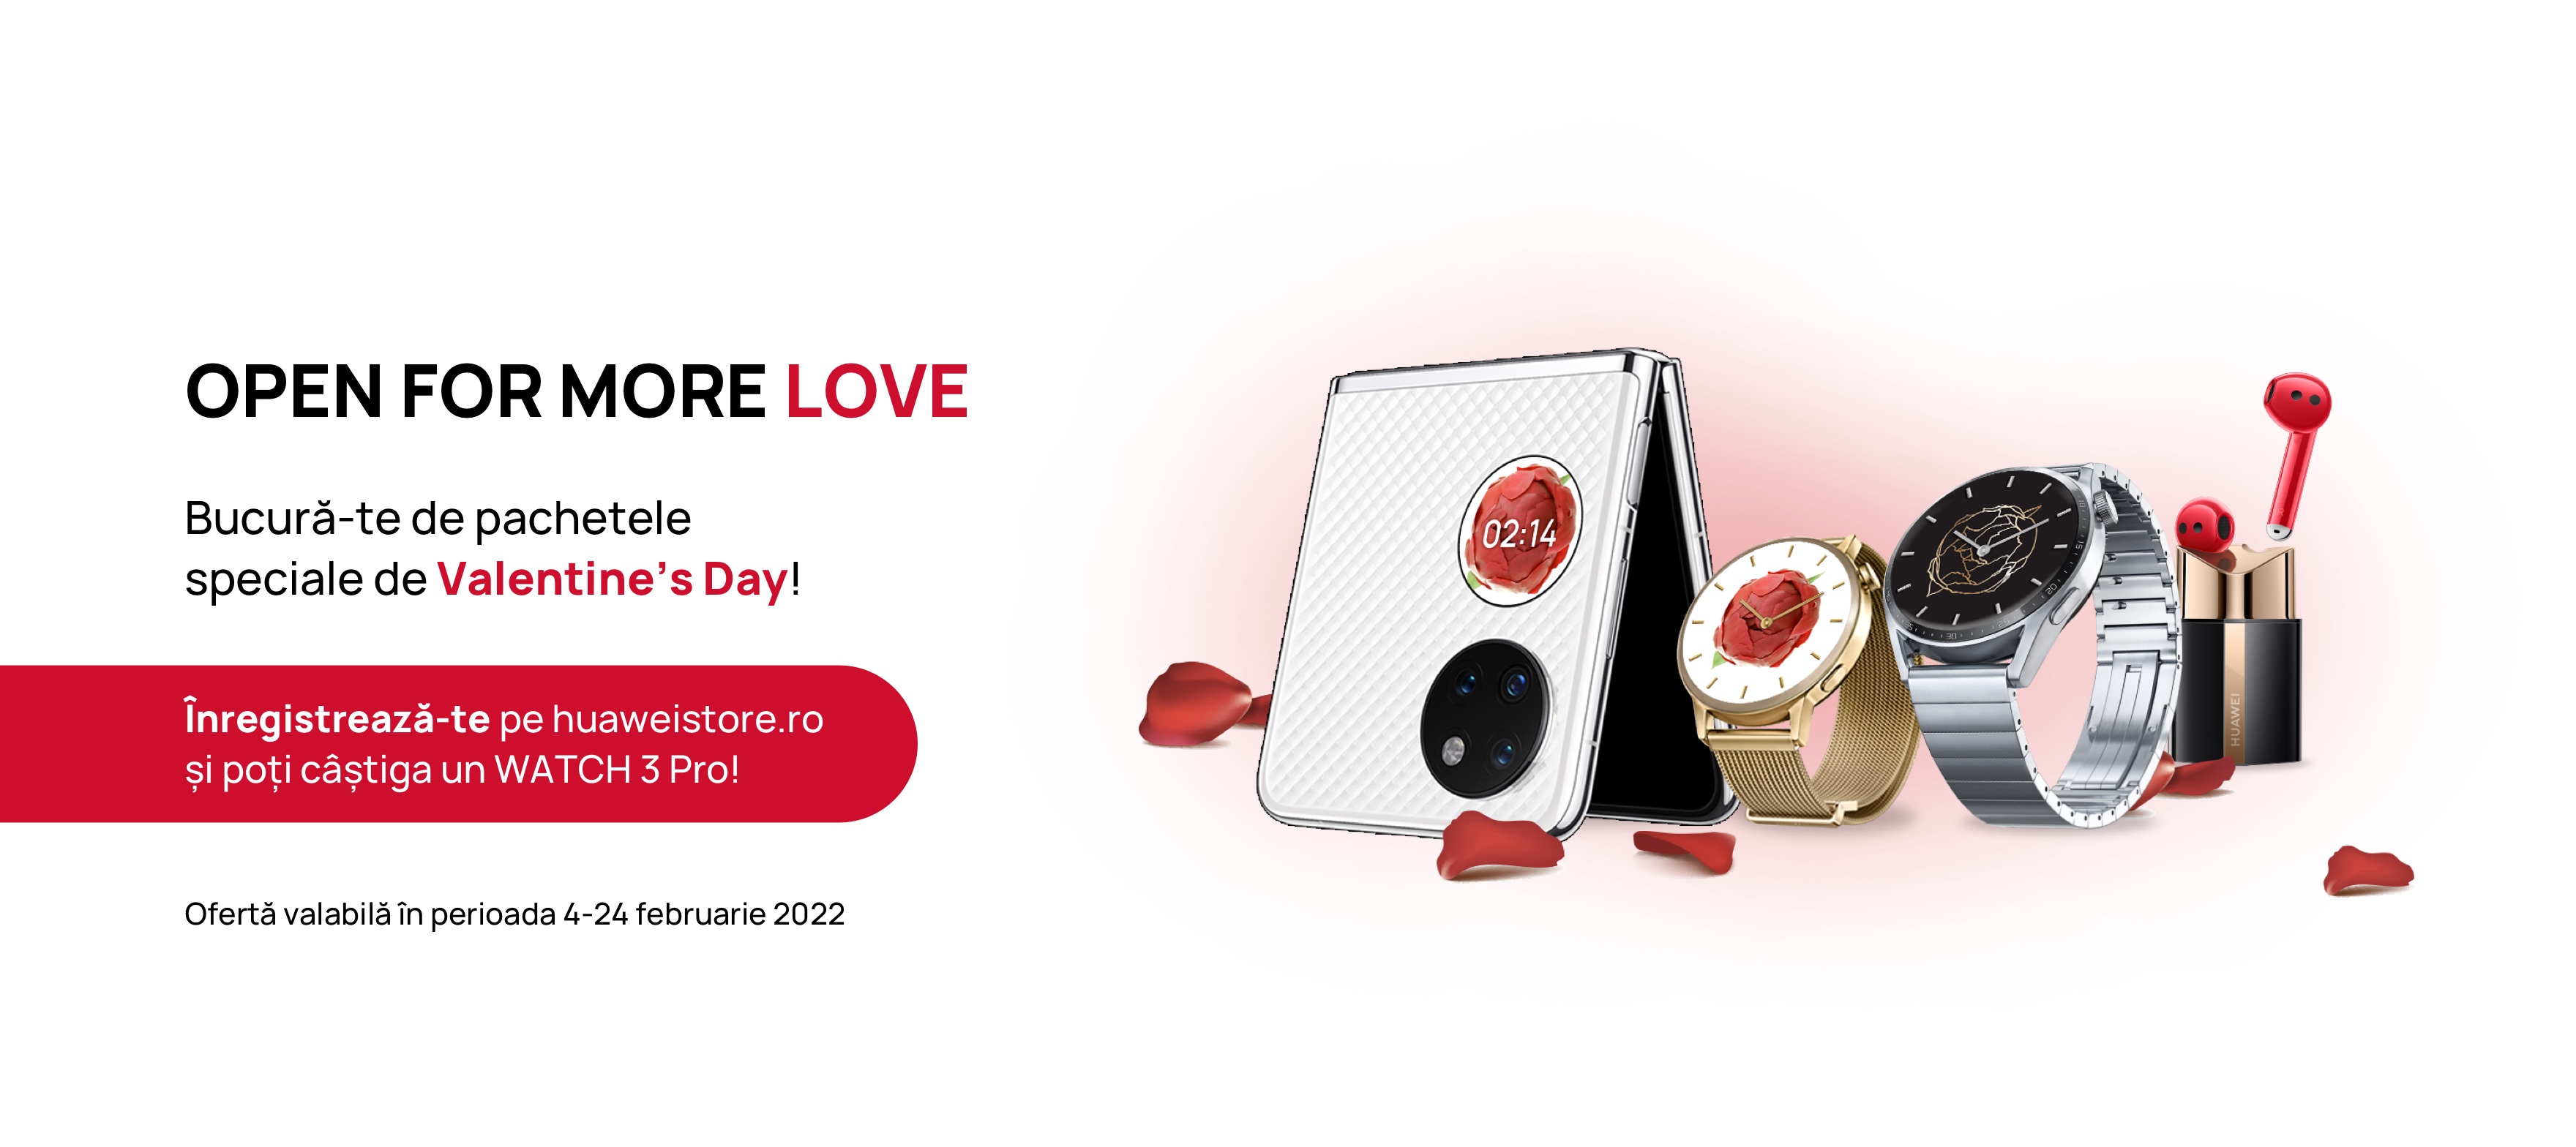 Huawei vine cu oferte extra de 10% pentru zeci de produse în cadrul campaniei de Valentine’s Day